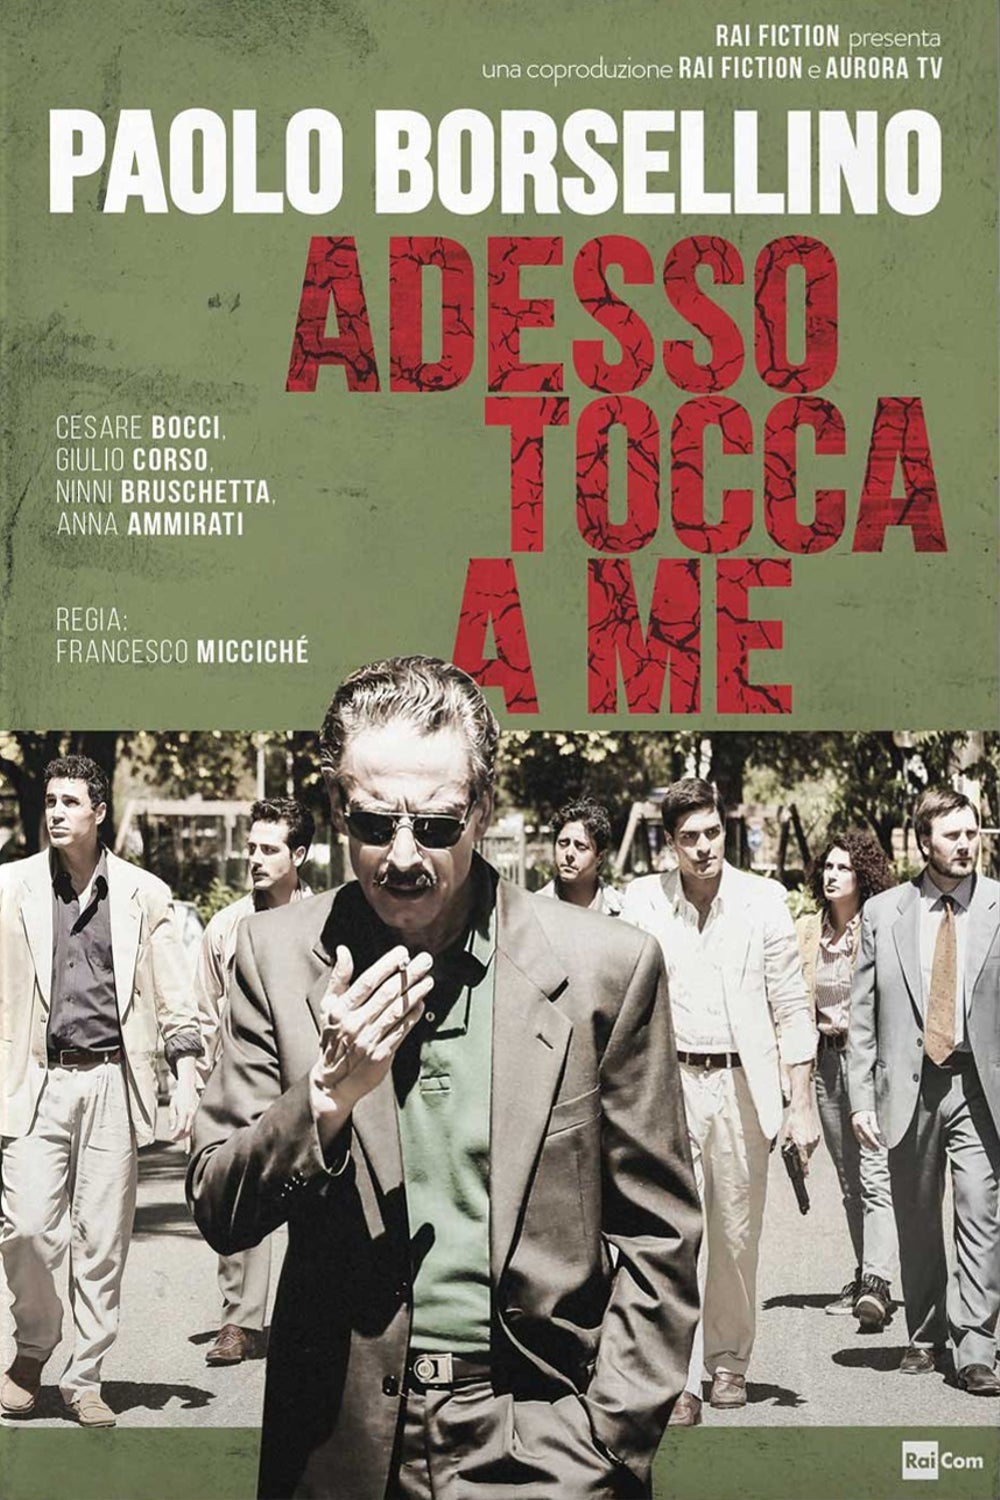 Paolo Borsellino – Adesso tocca a me [HD] (2017)